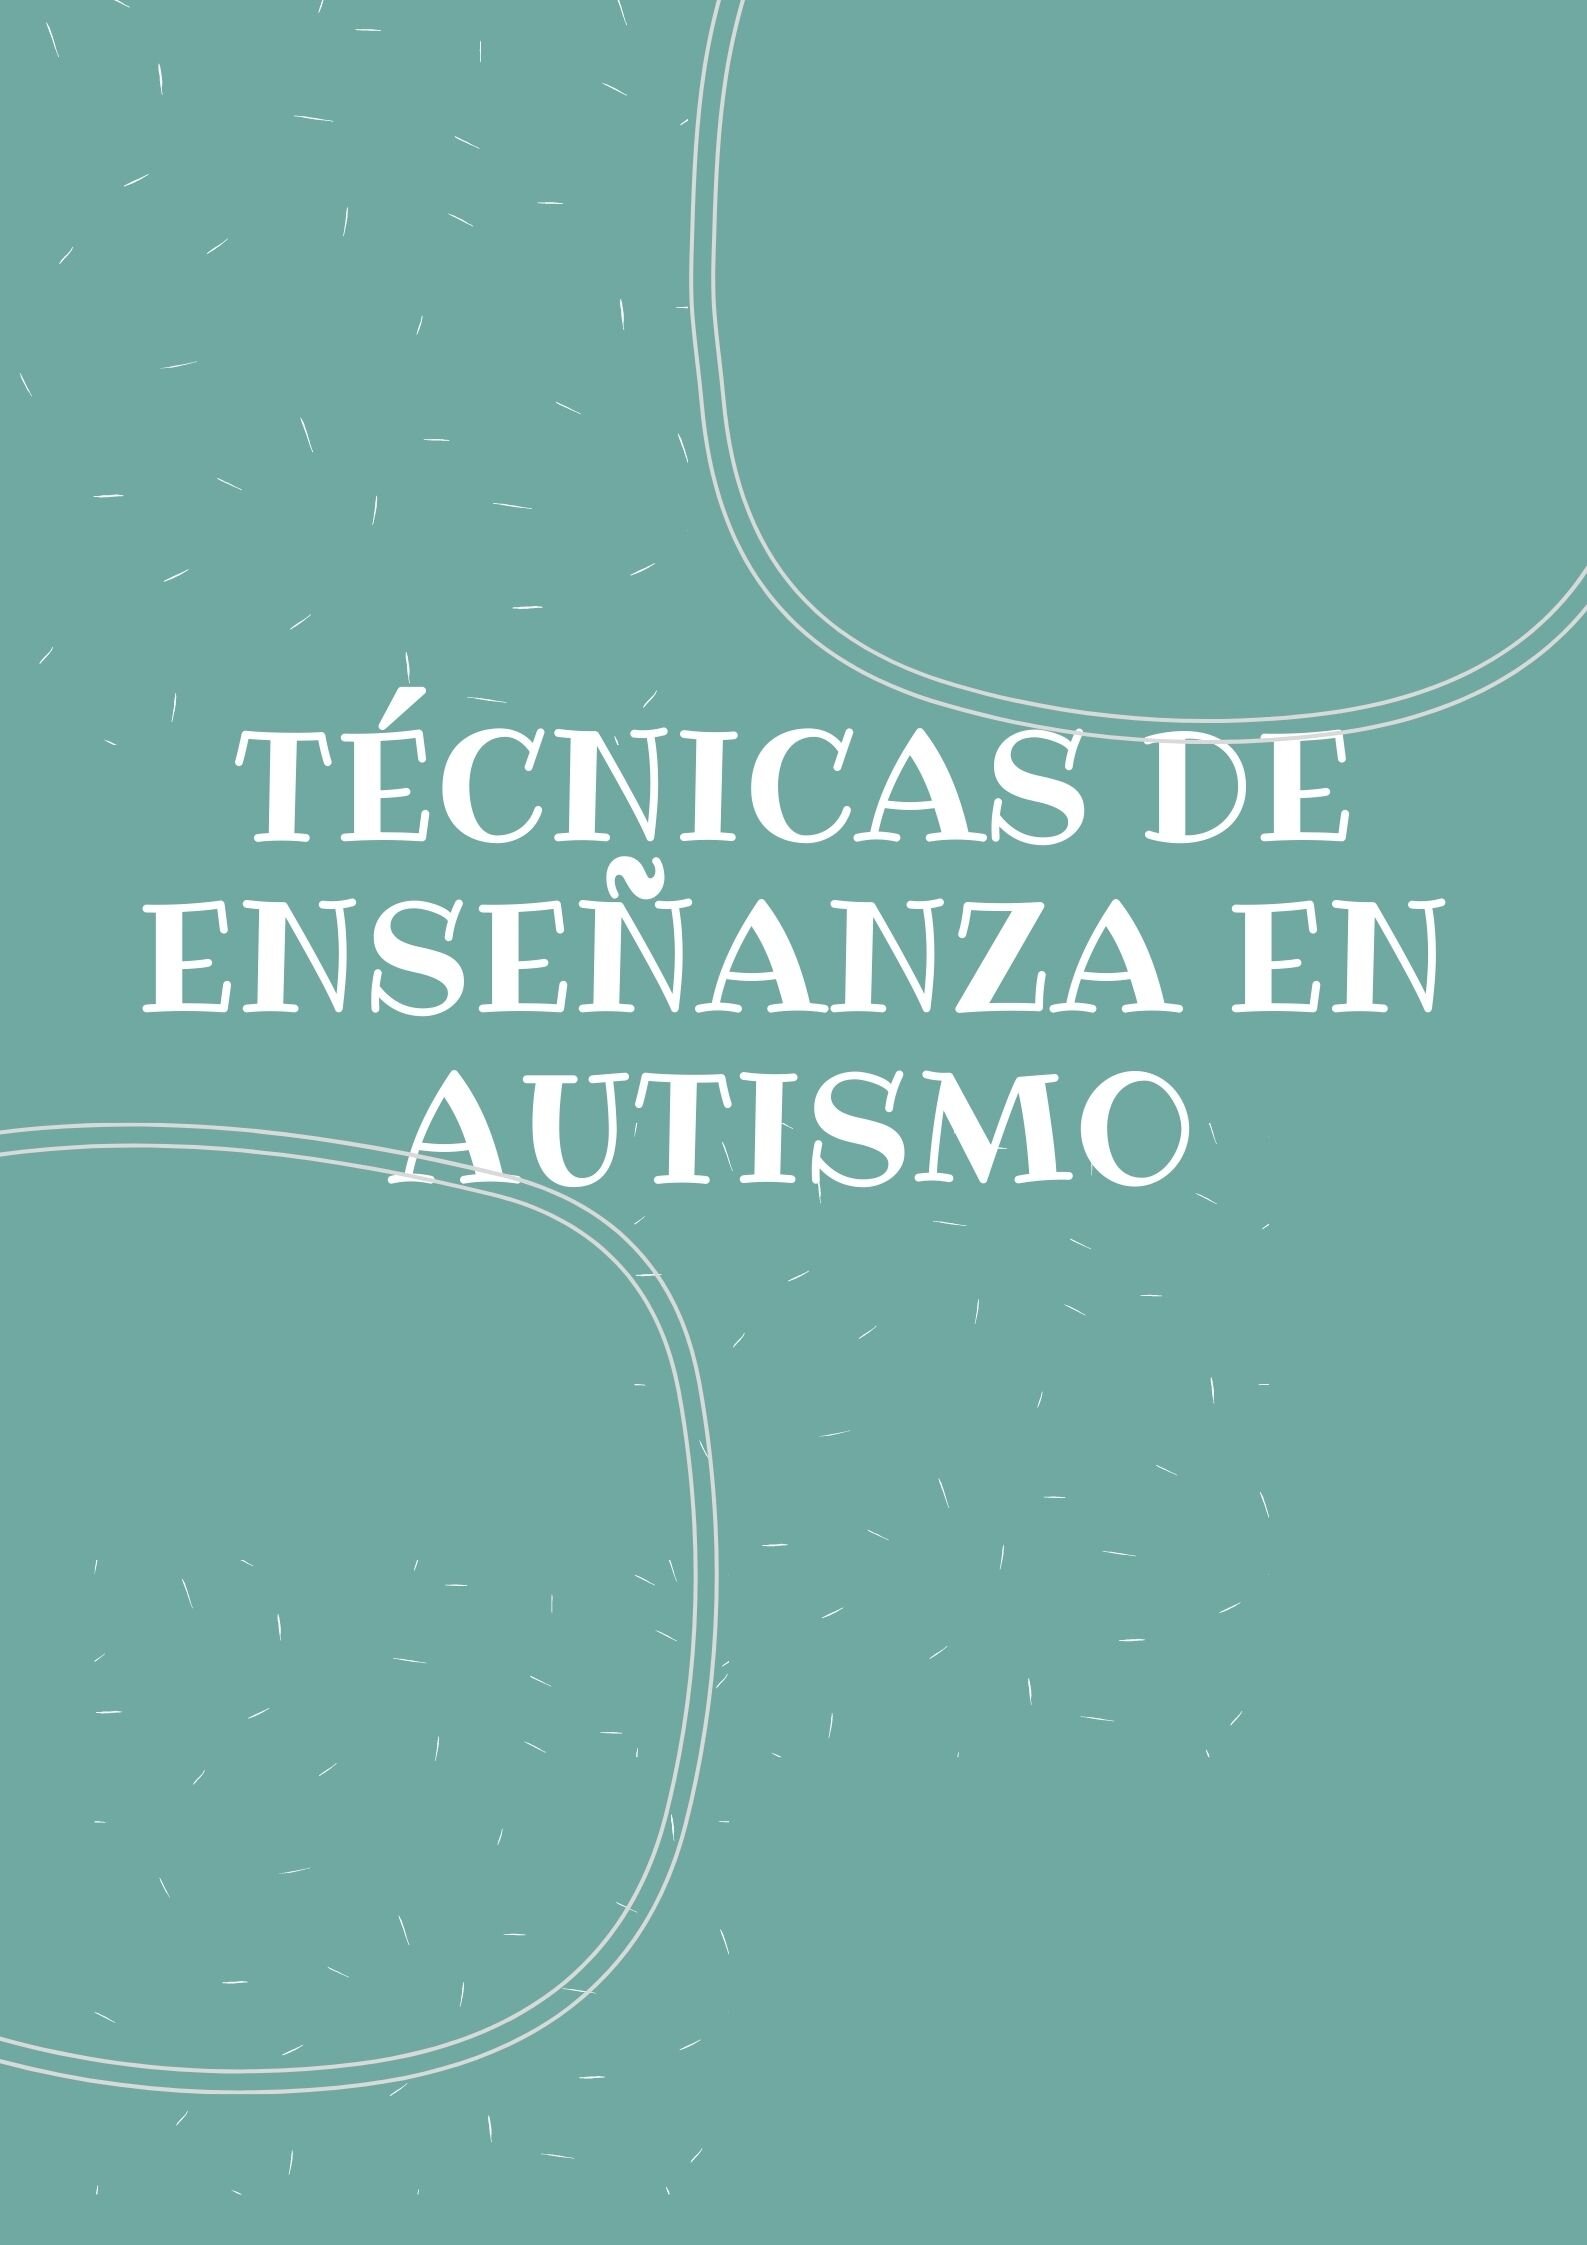 Refuerzo positivo  en niños con autismo